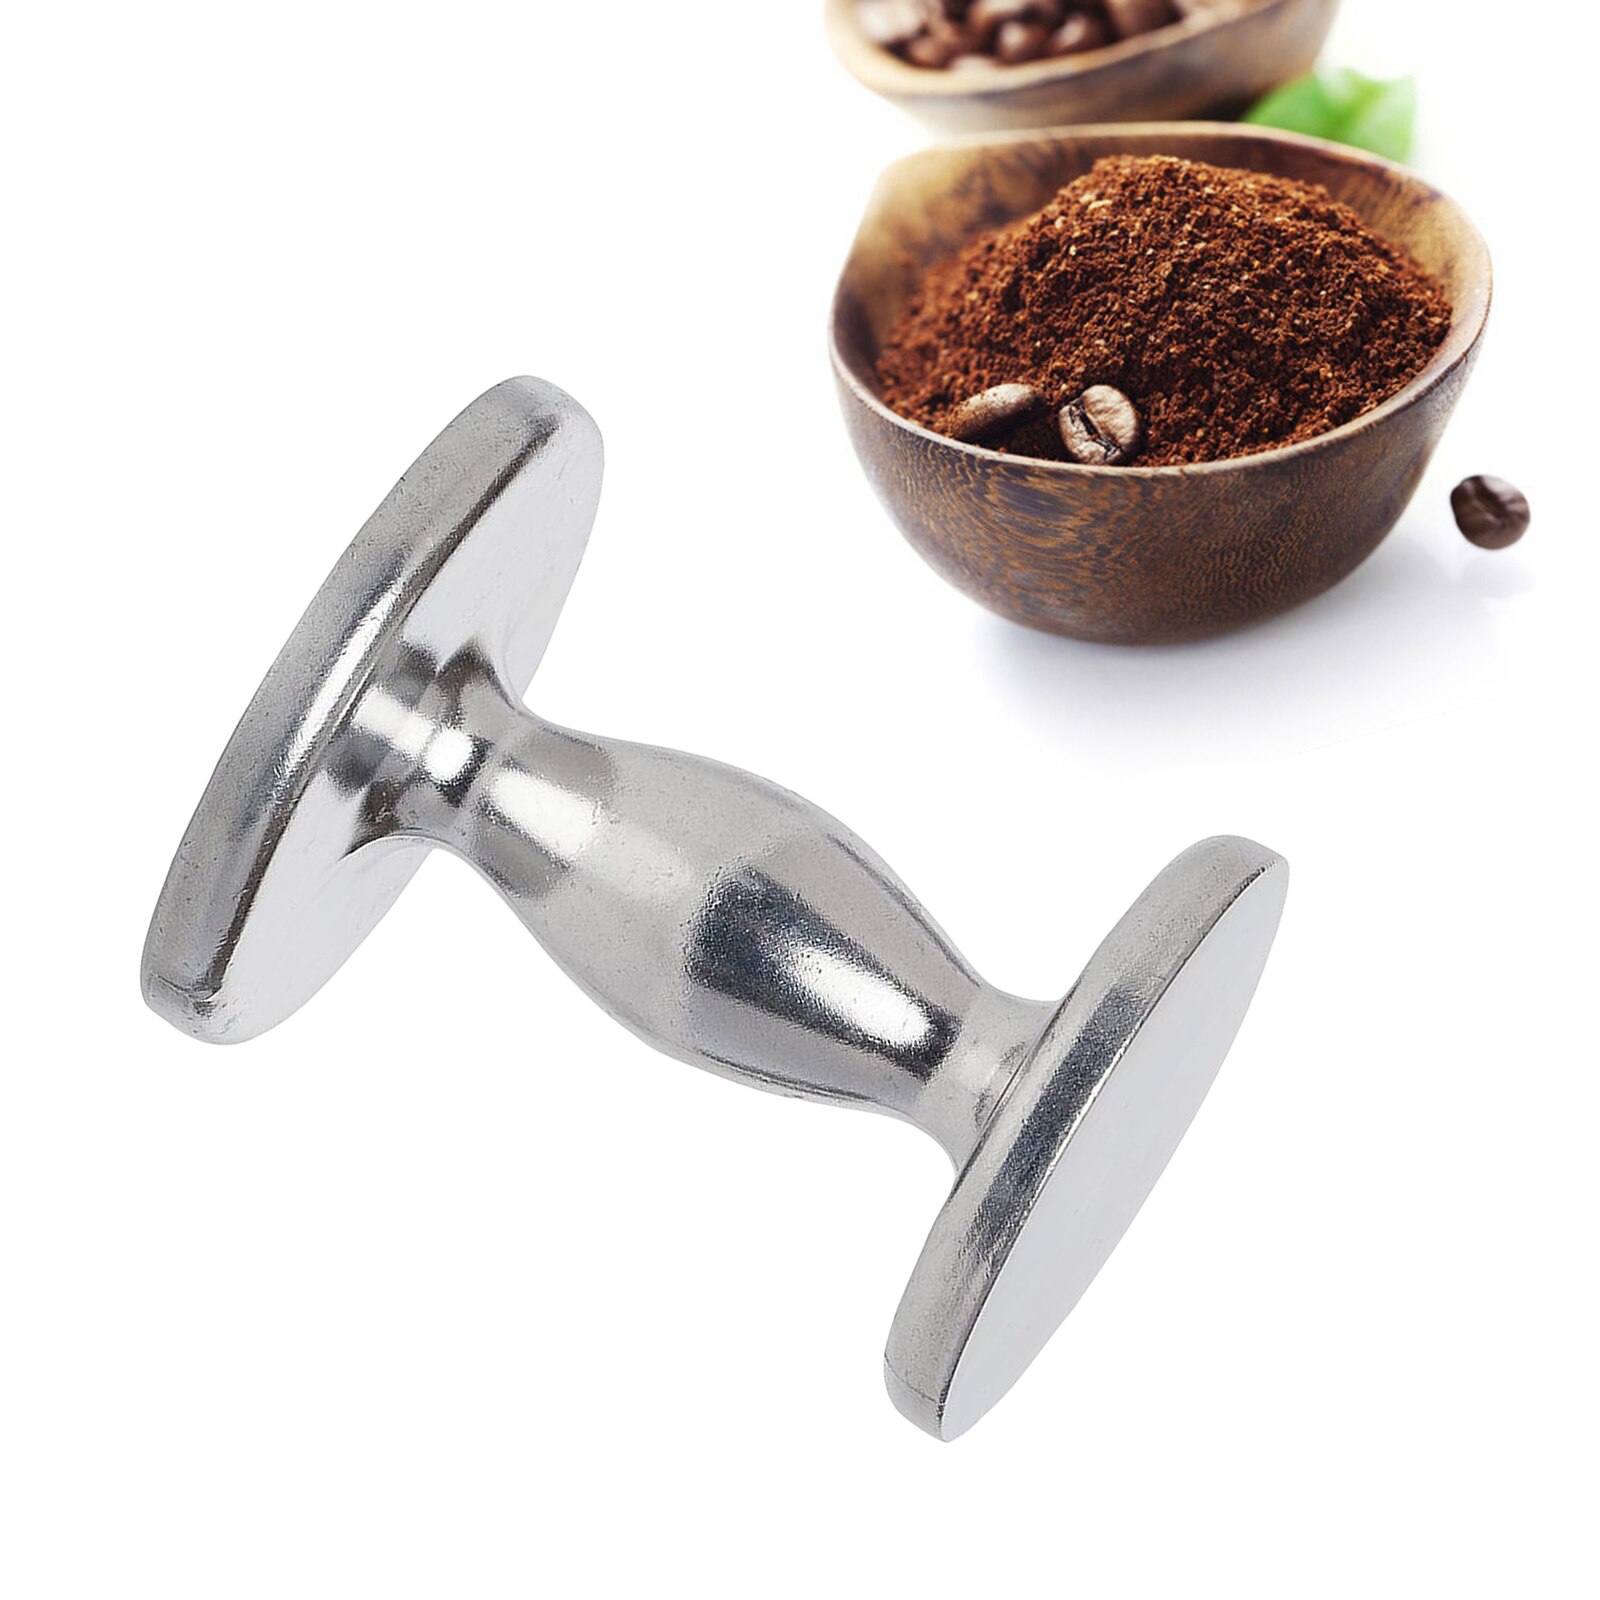 Dubbelzijdige Espresso/Koffie Barista Sabotage 51Mm (2 "),58Mm (2 1/4")